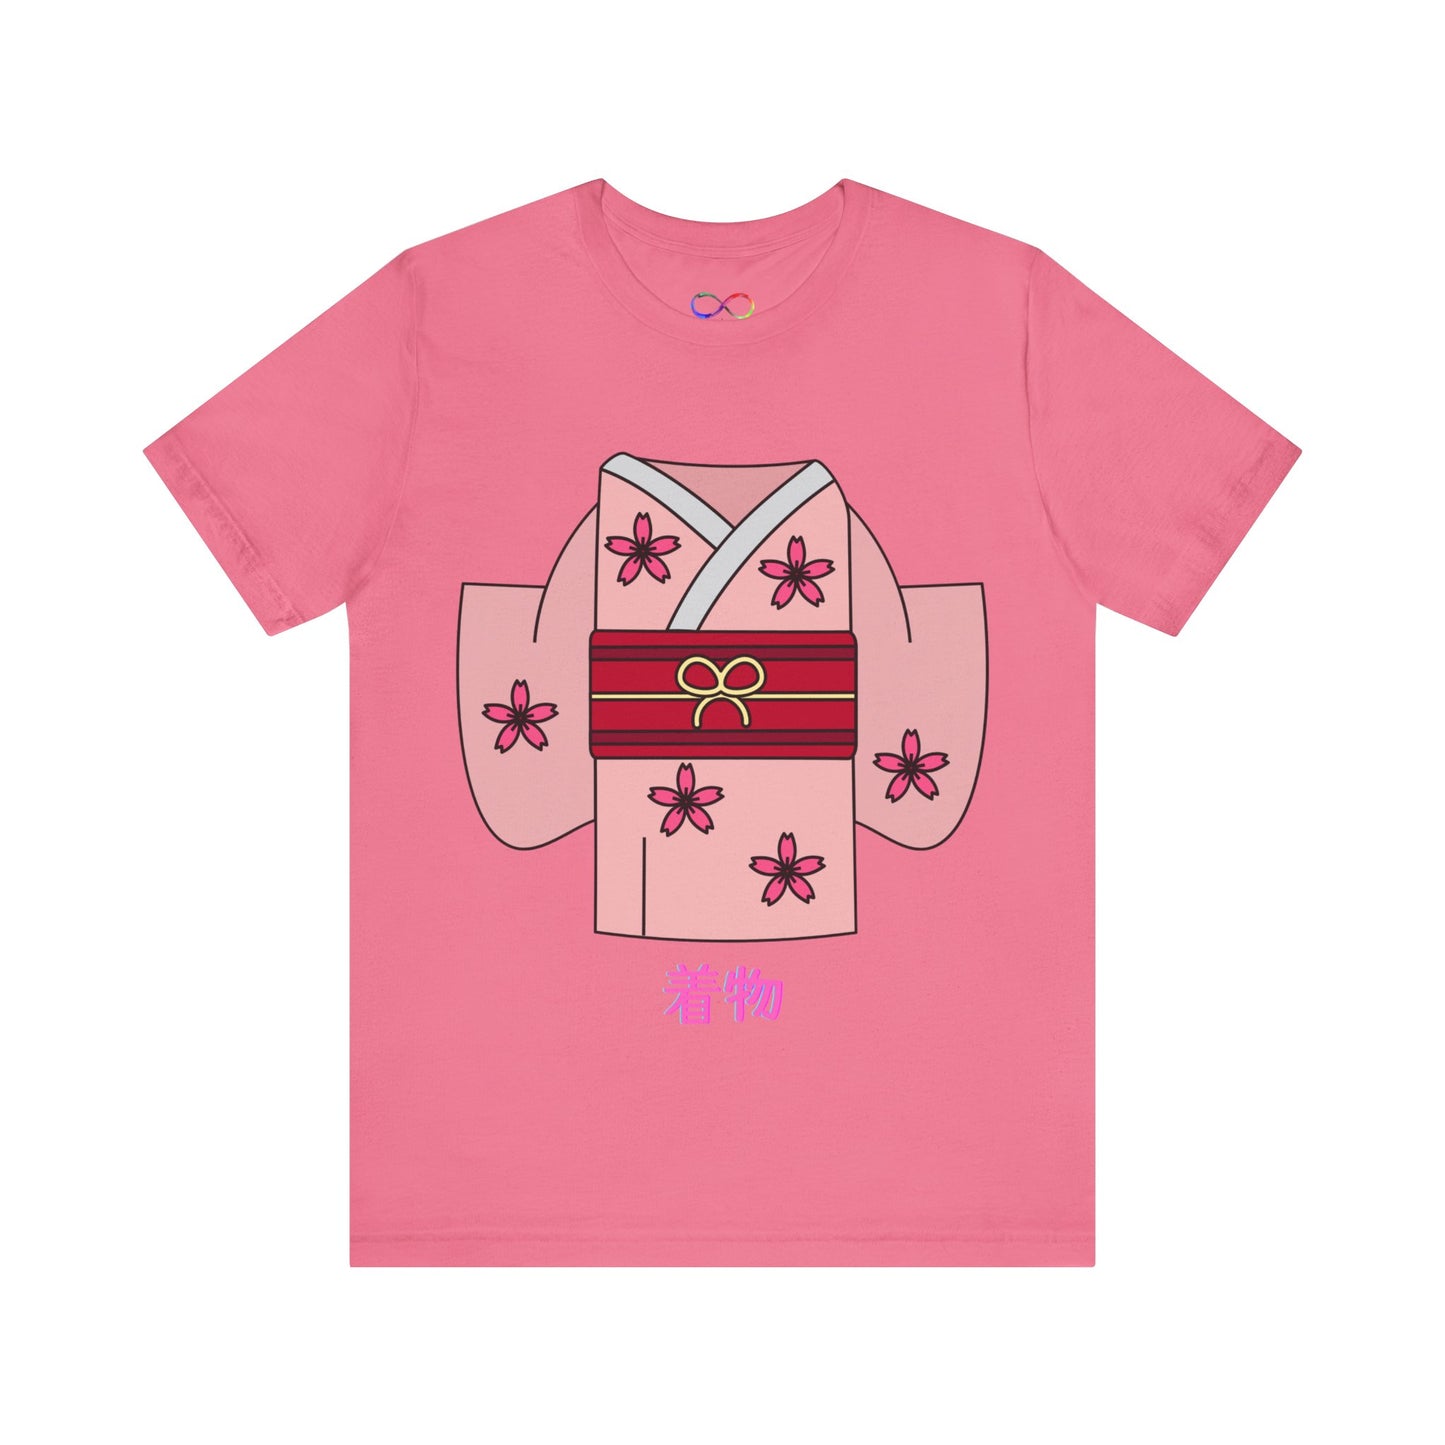 Kimono t-shirts